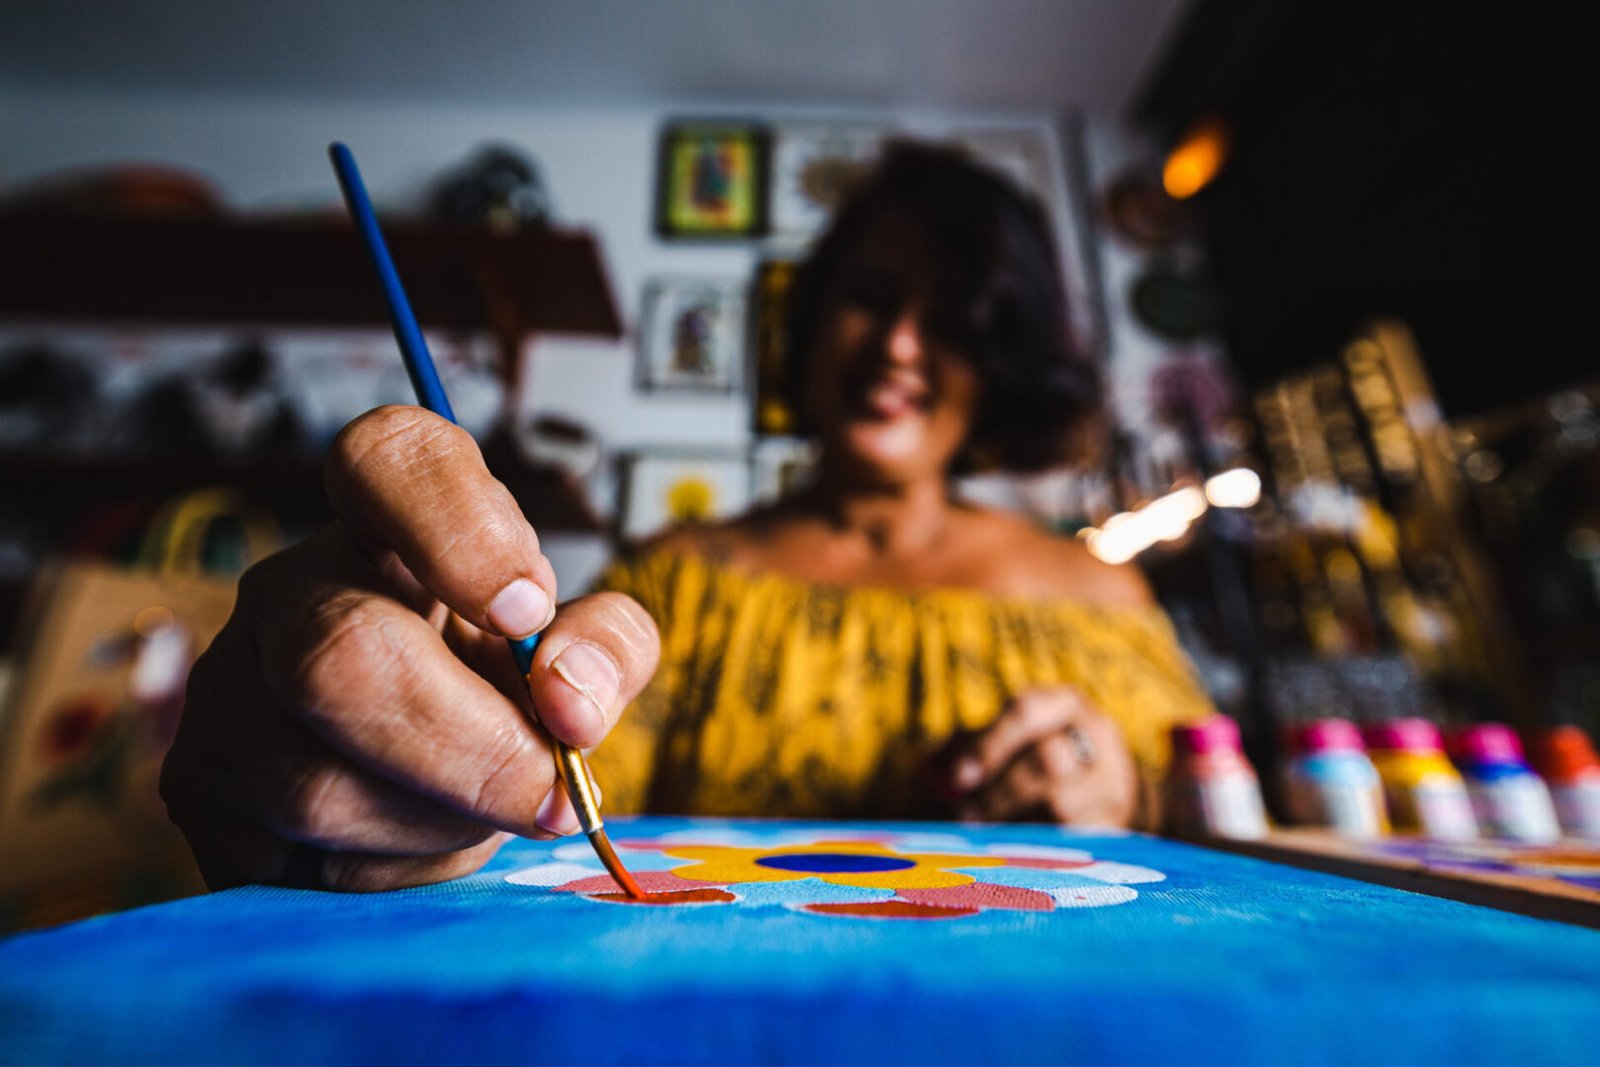 Mulher pintando tela com foco na mão dela com o pincel.